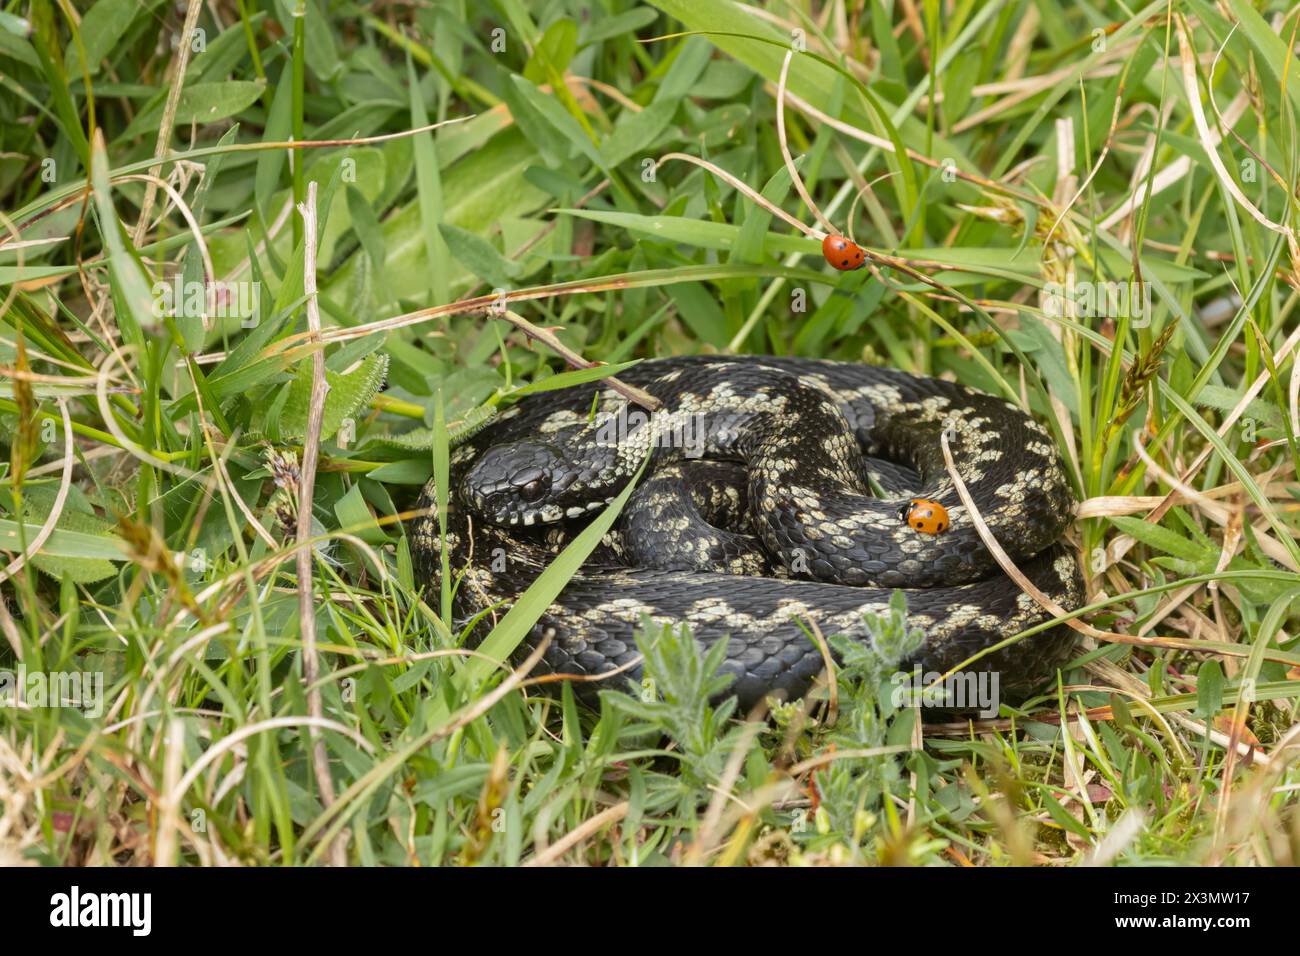 Europäische Adler (Vipera berus), adulte Schlange, die sich im Grasland mit einem Marienkäfer auf ihrem Körper befindet, England, Vereinigtes Königreich Stockfoto